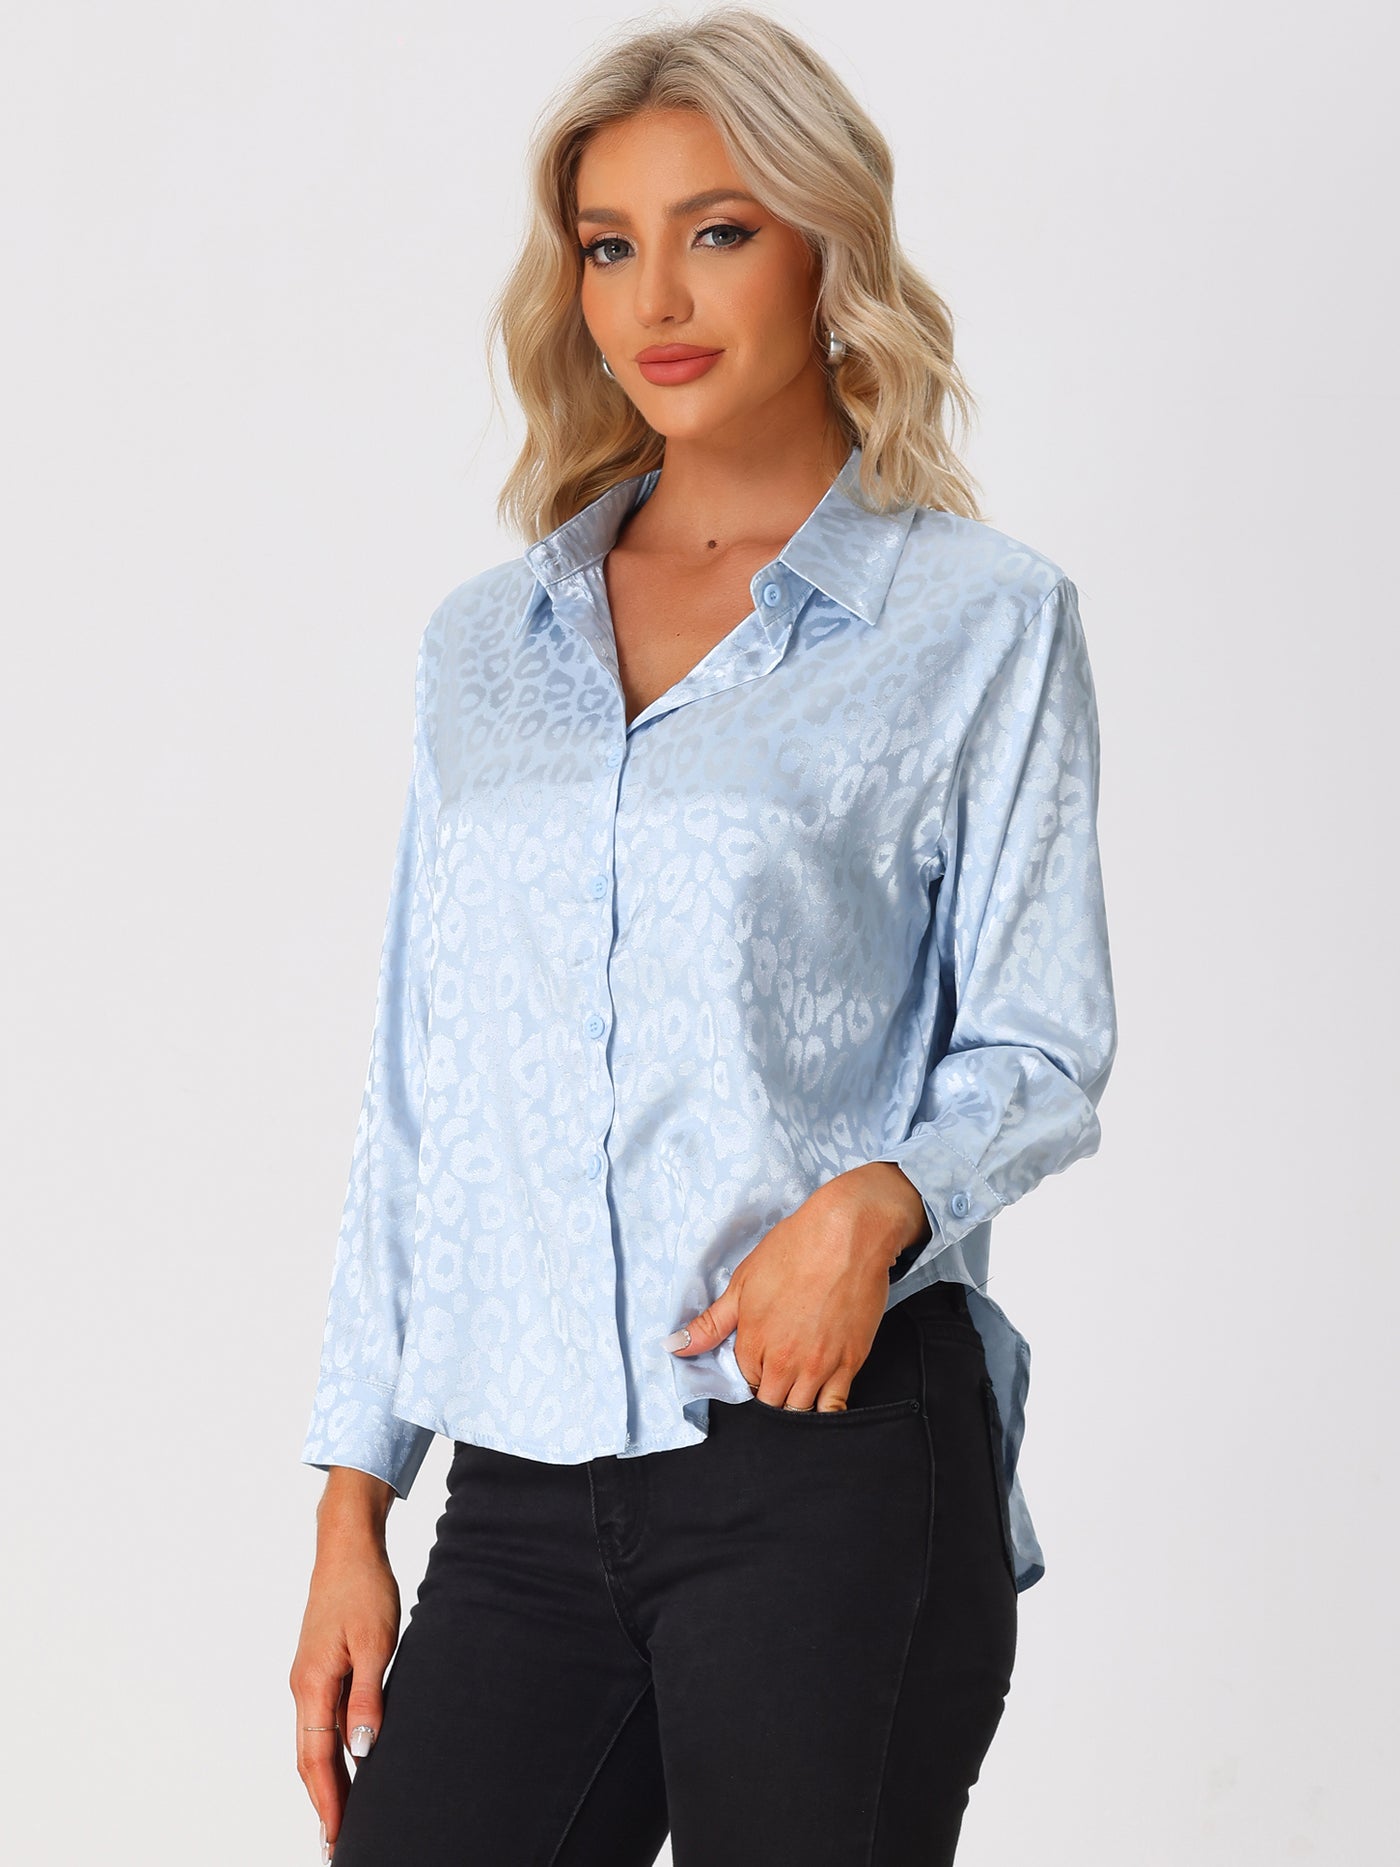 Allegra K Women's Button Down Leopard Print Business Casual Shirt